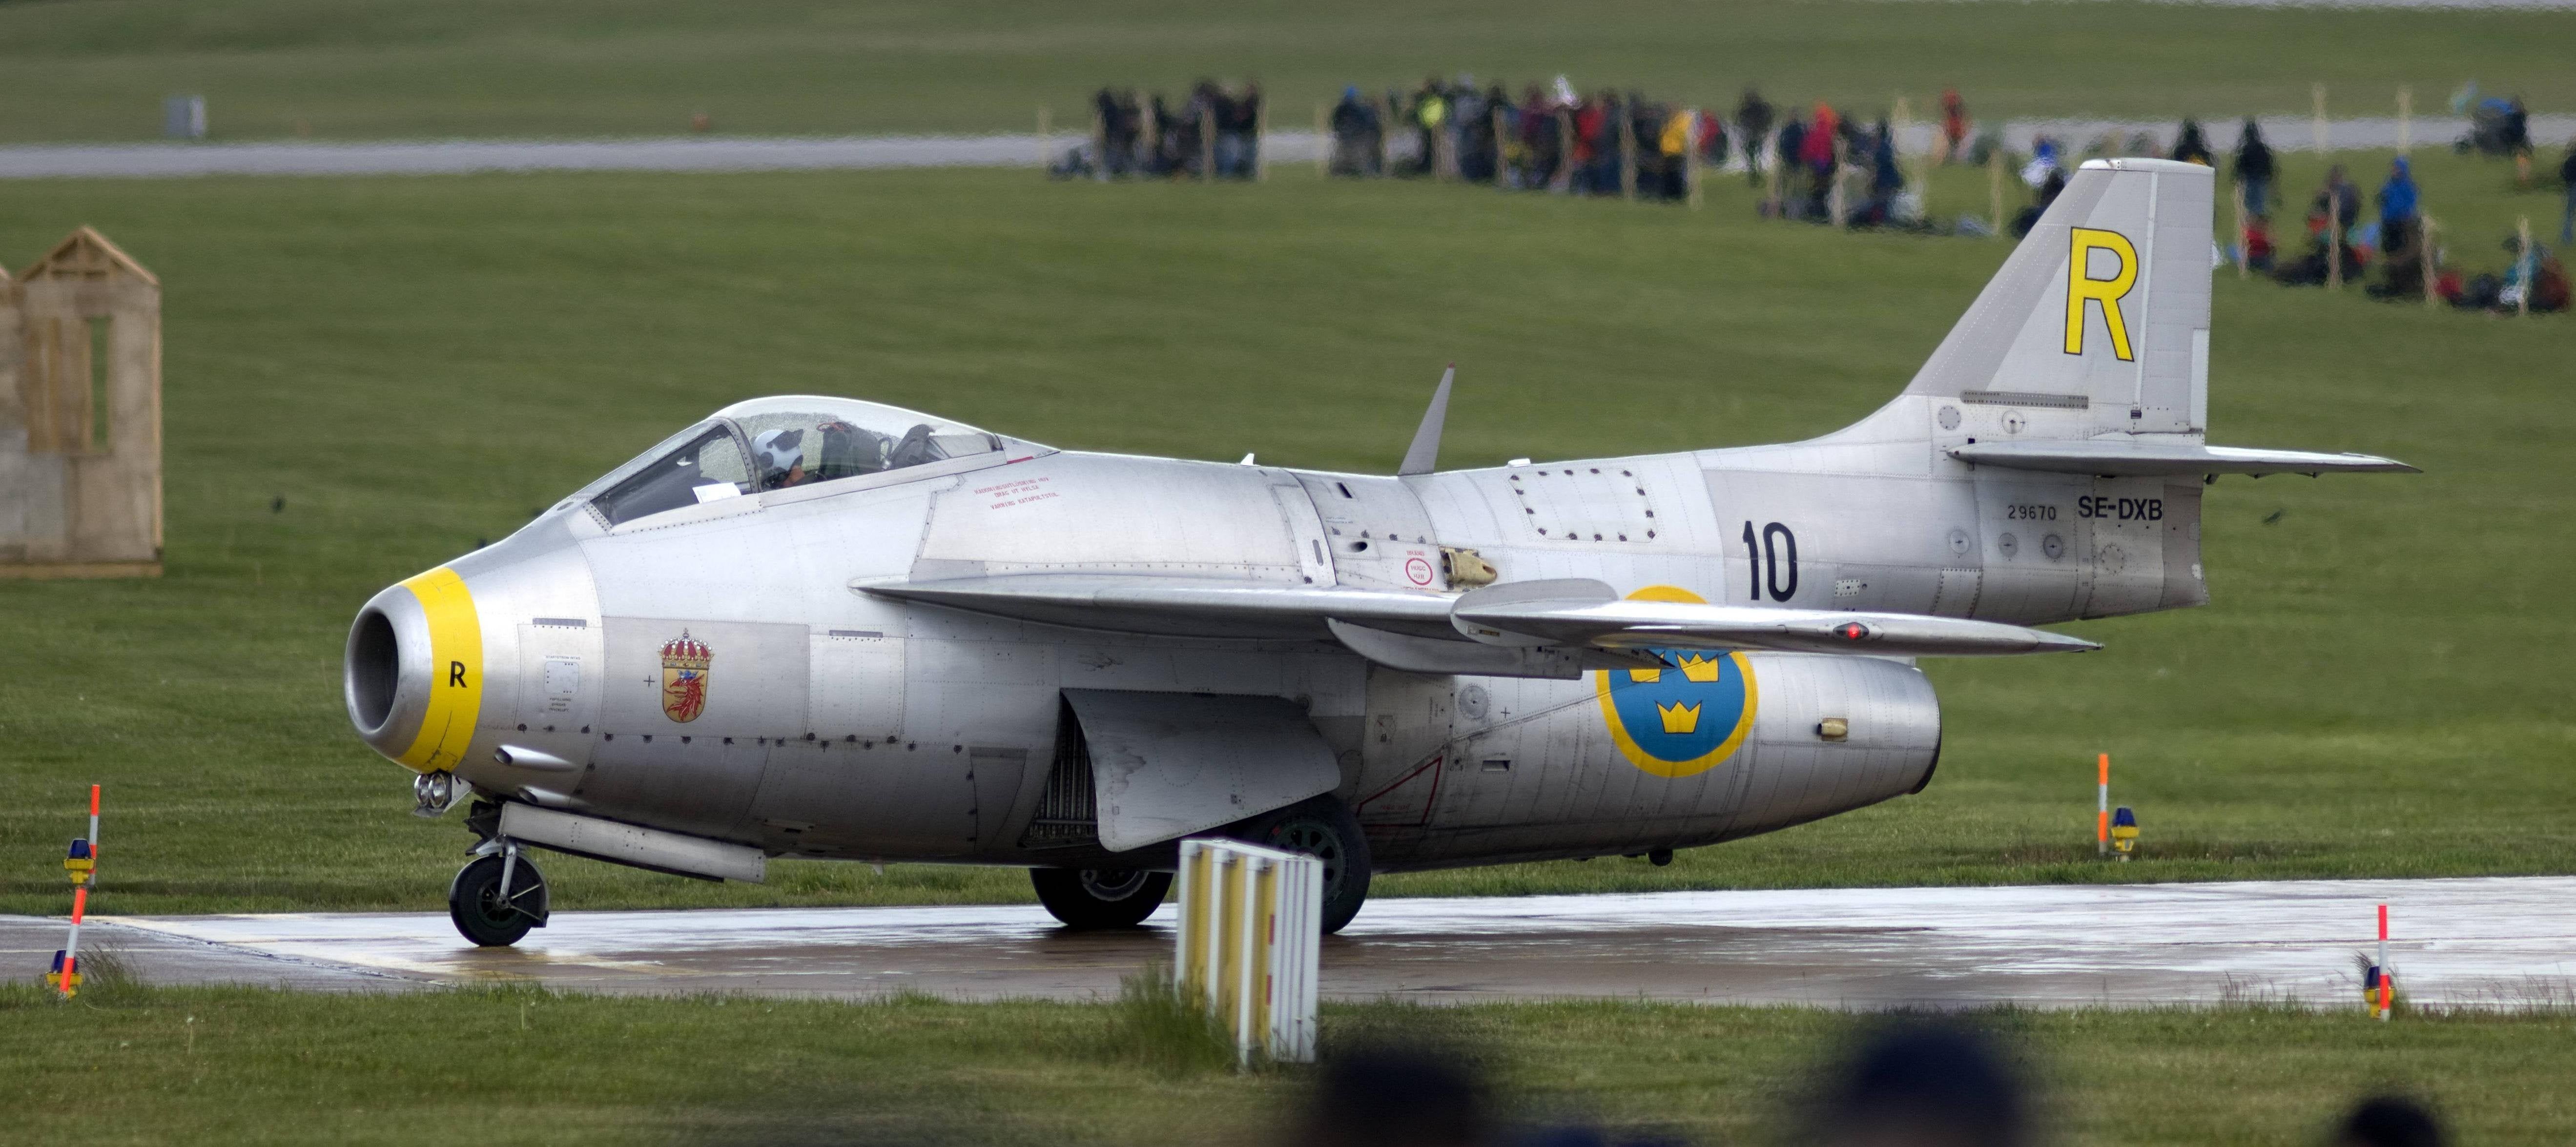 Swedish cold war fighter jet